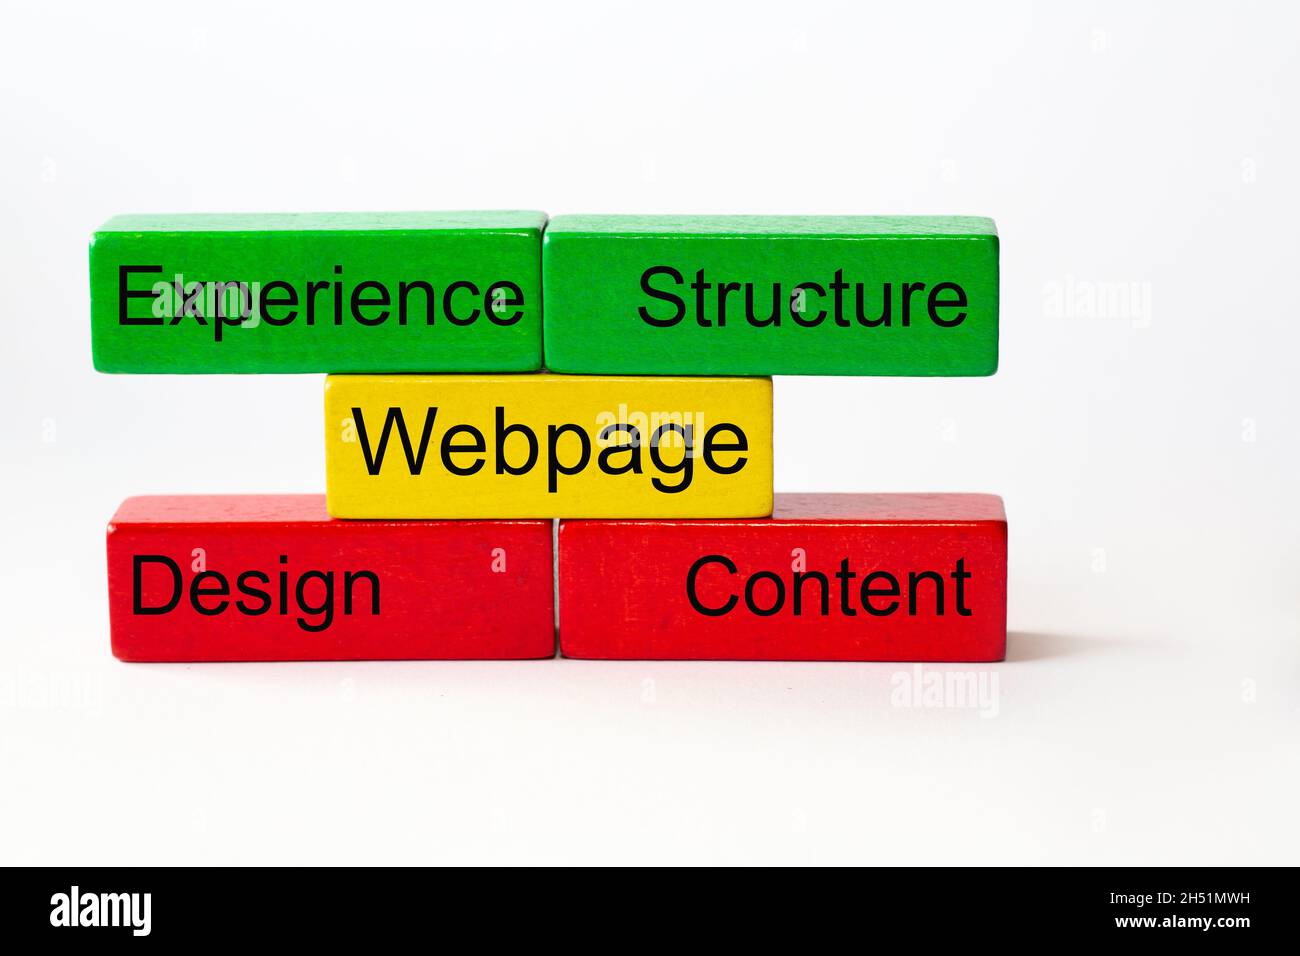 Pagina web, struttura, contenuto, Design, Expirience si trova su blocchi colorati isolati su sfondo bianco Foto Stock